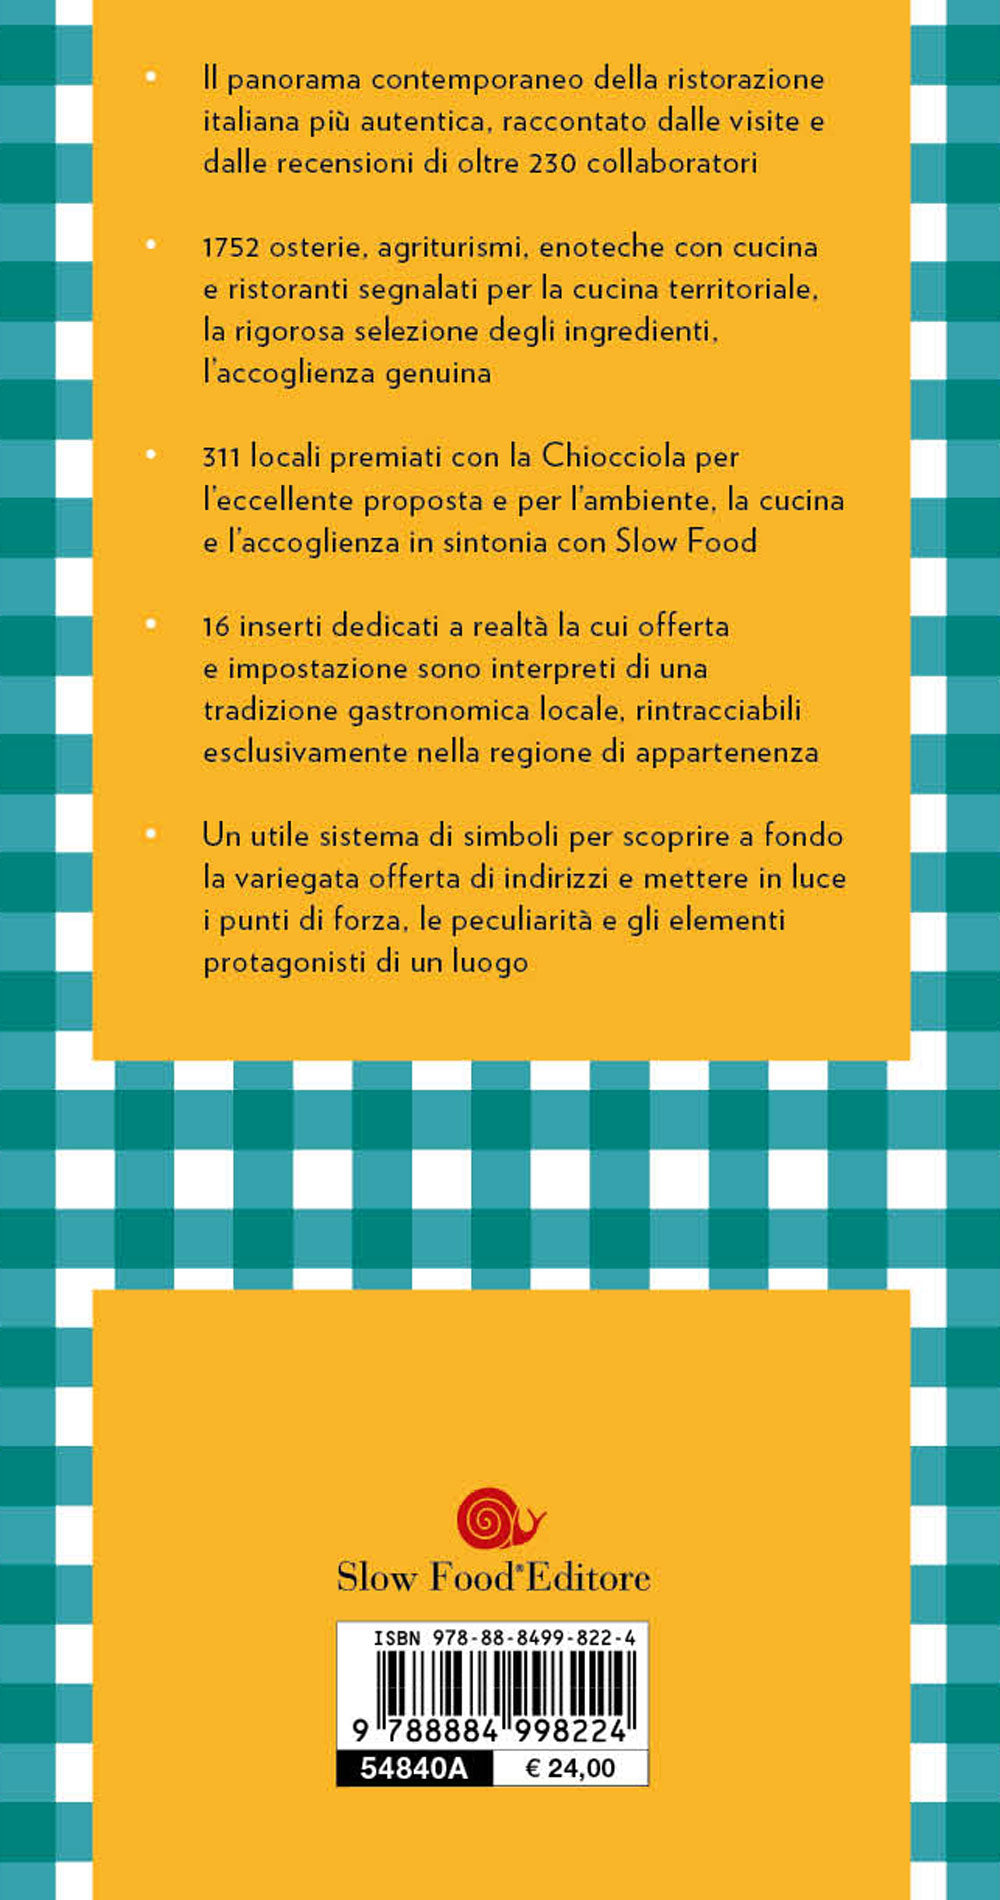 Osterie d'Italia 2024::Sussidiario del mangiarbene all'italiana